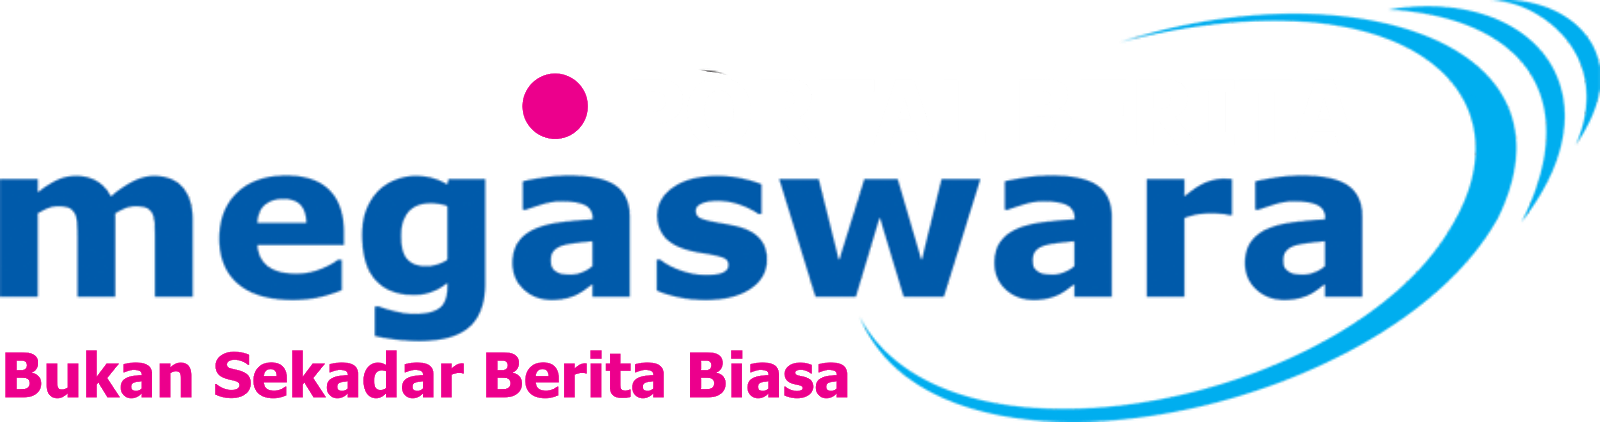 PORTAL BERITA MEGASWARA